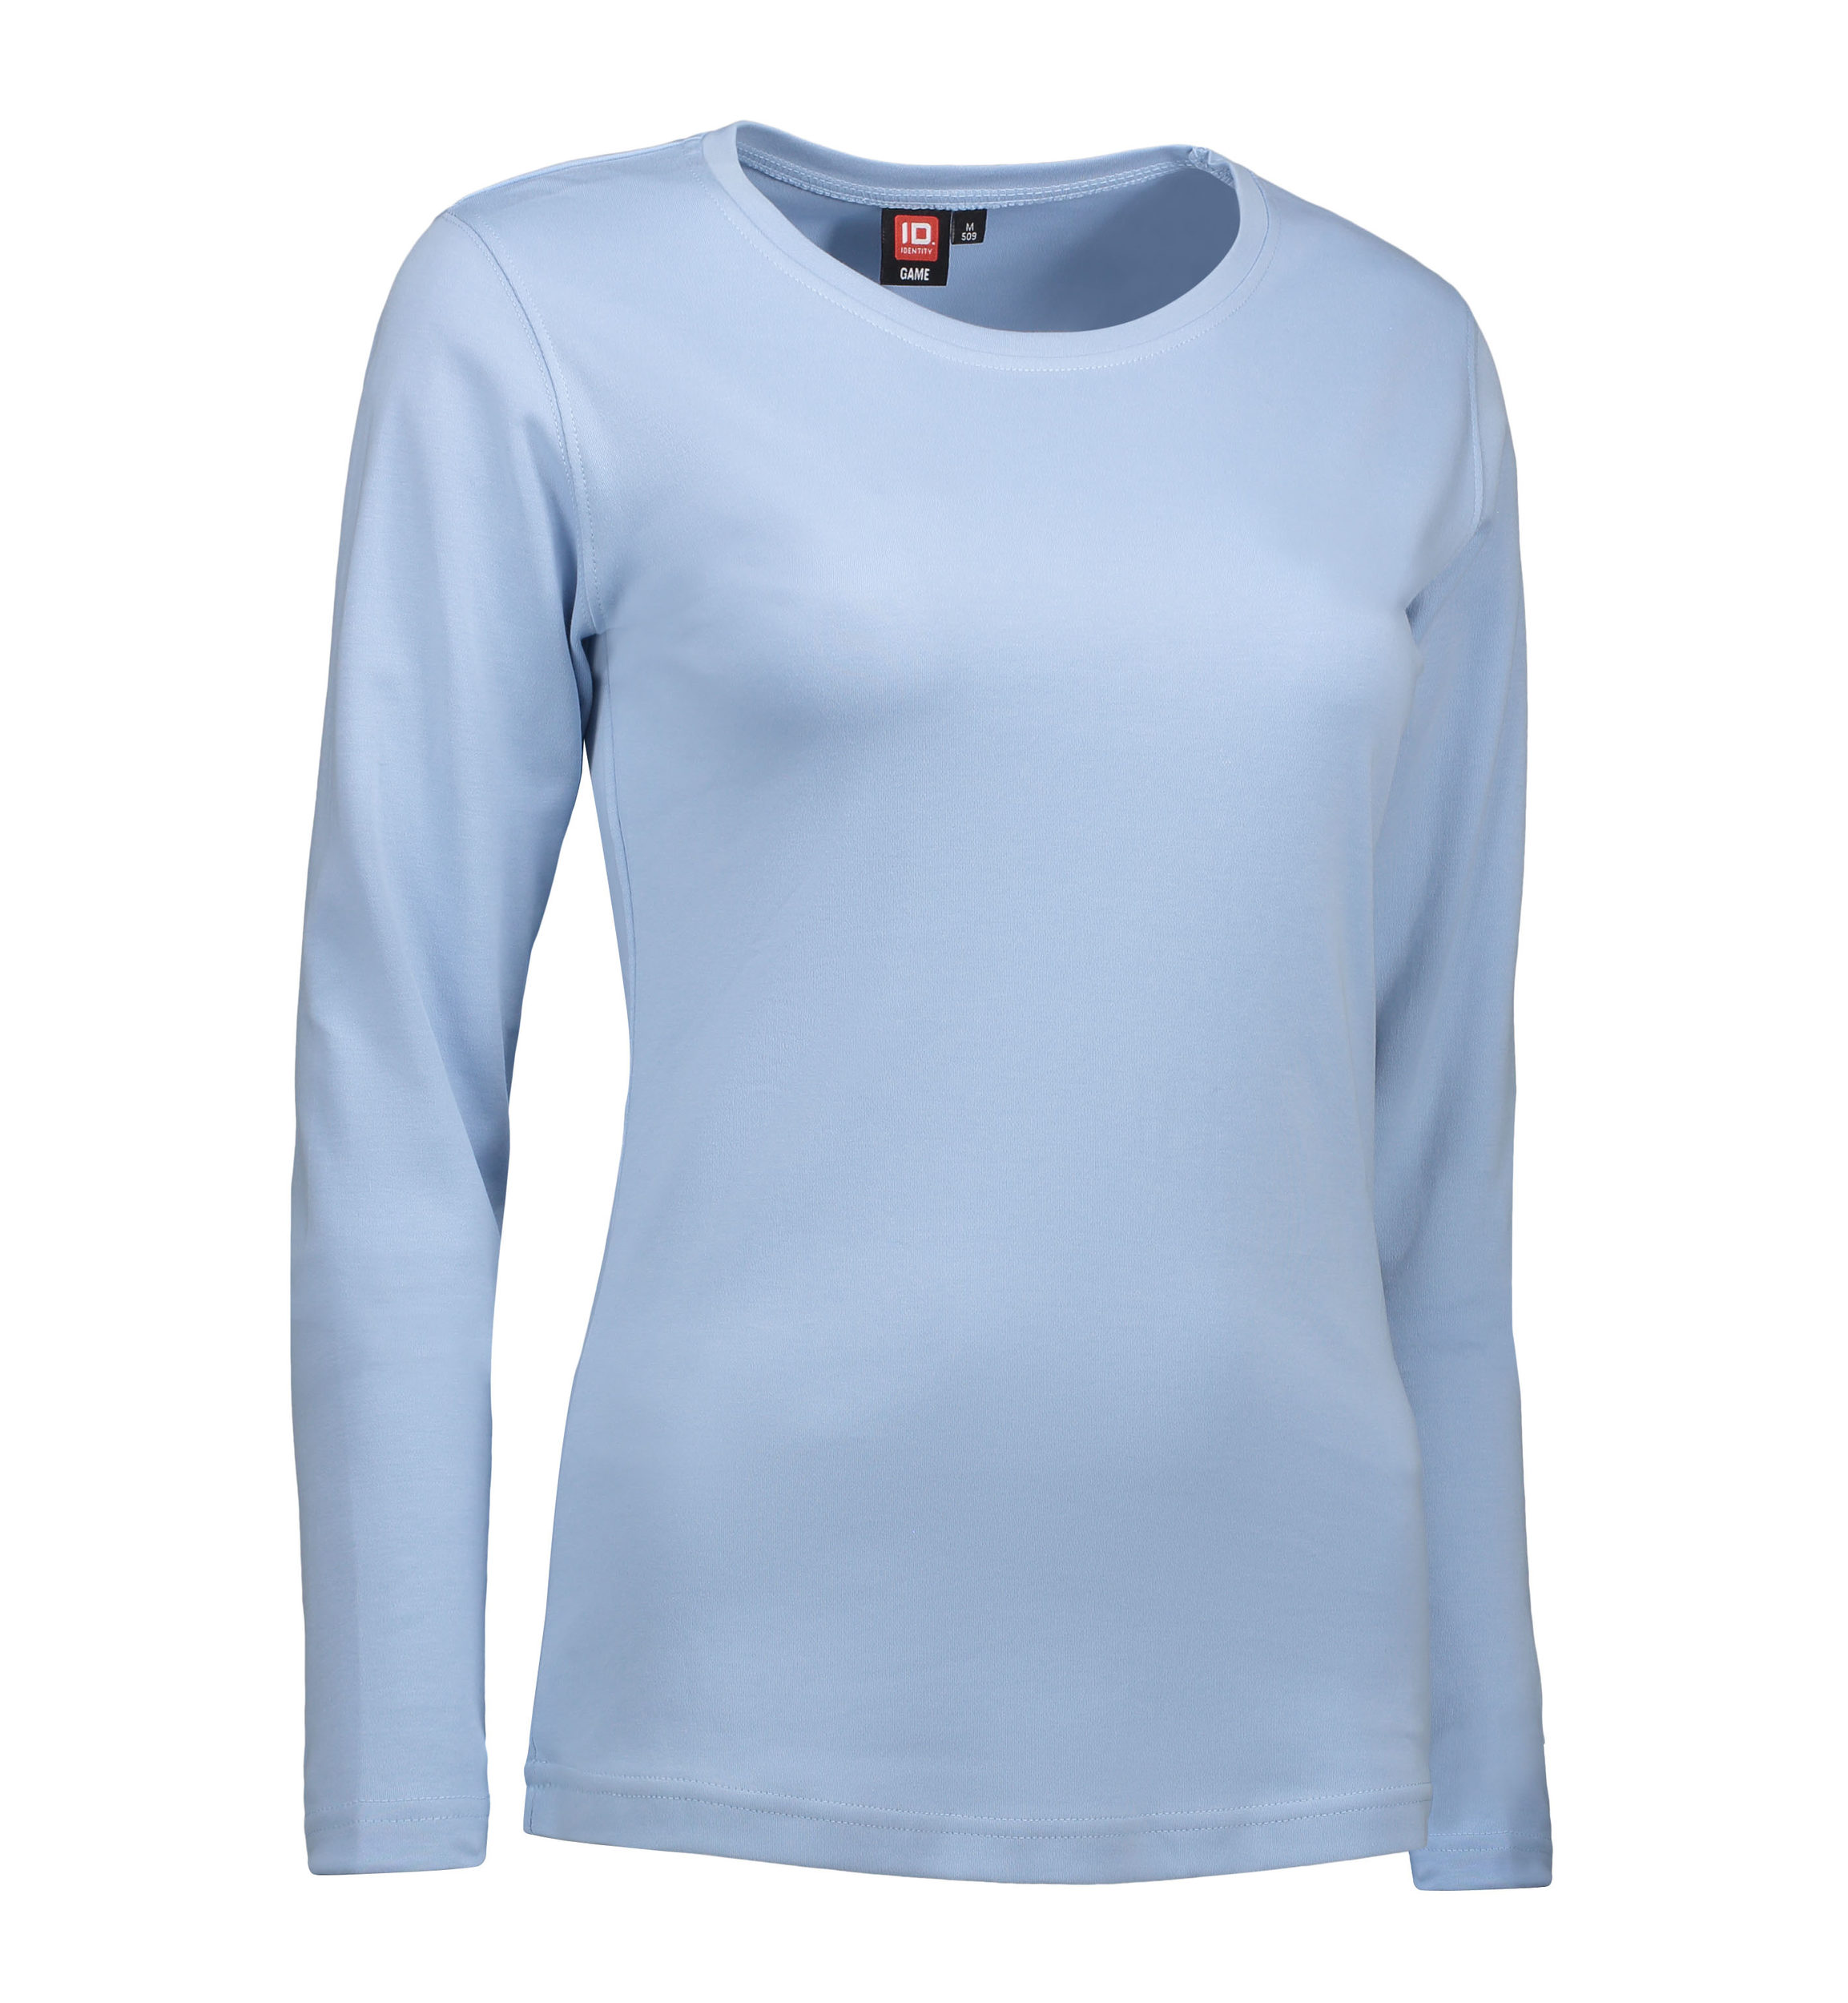 Billede af Langærmet dame t-shirt i lyseblå - XL hos Sygeplejebutikken.dk